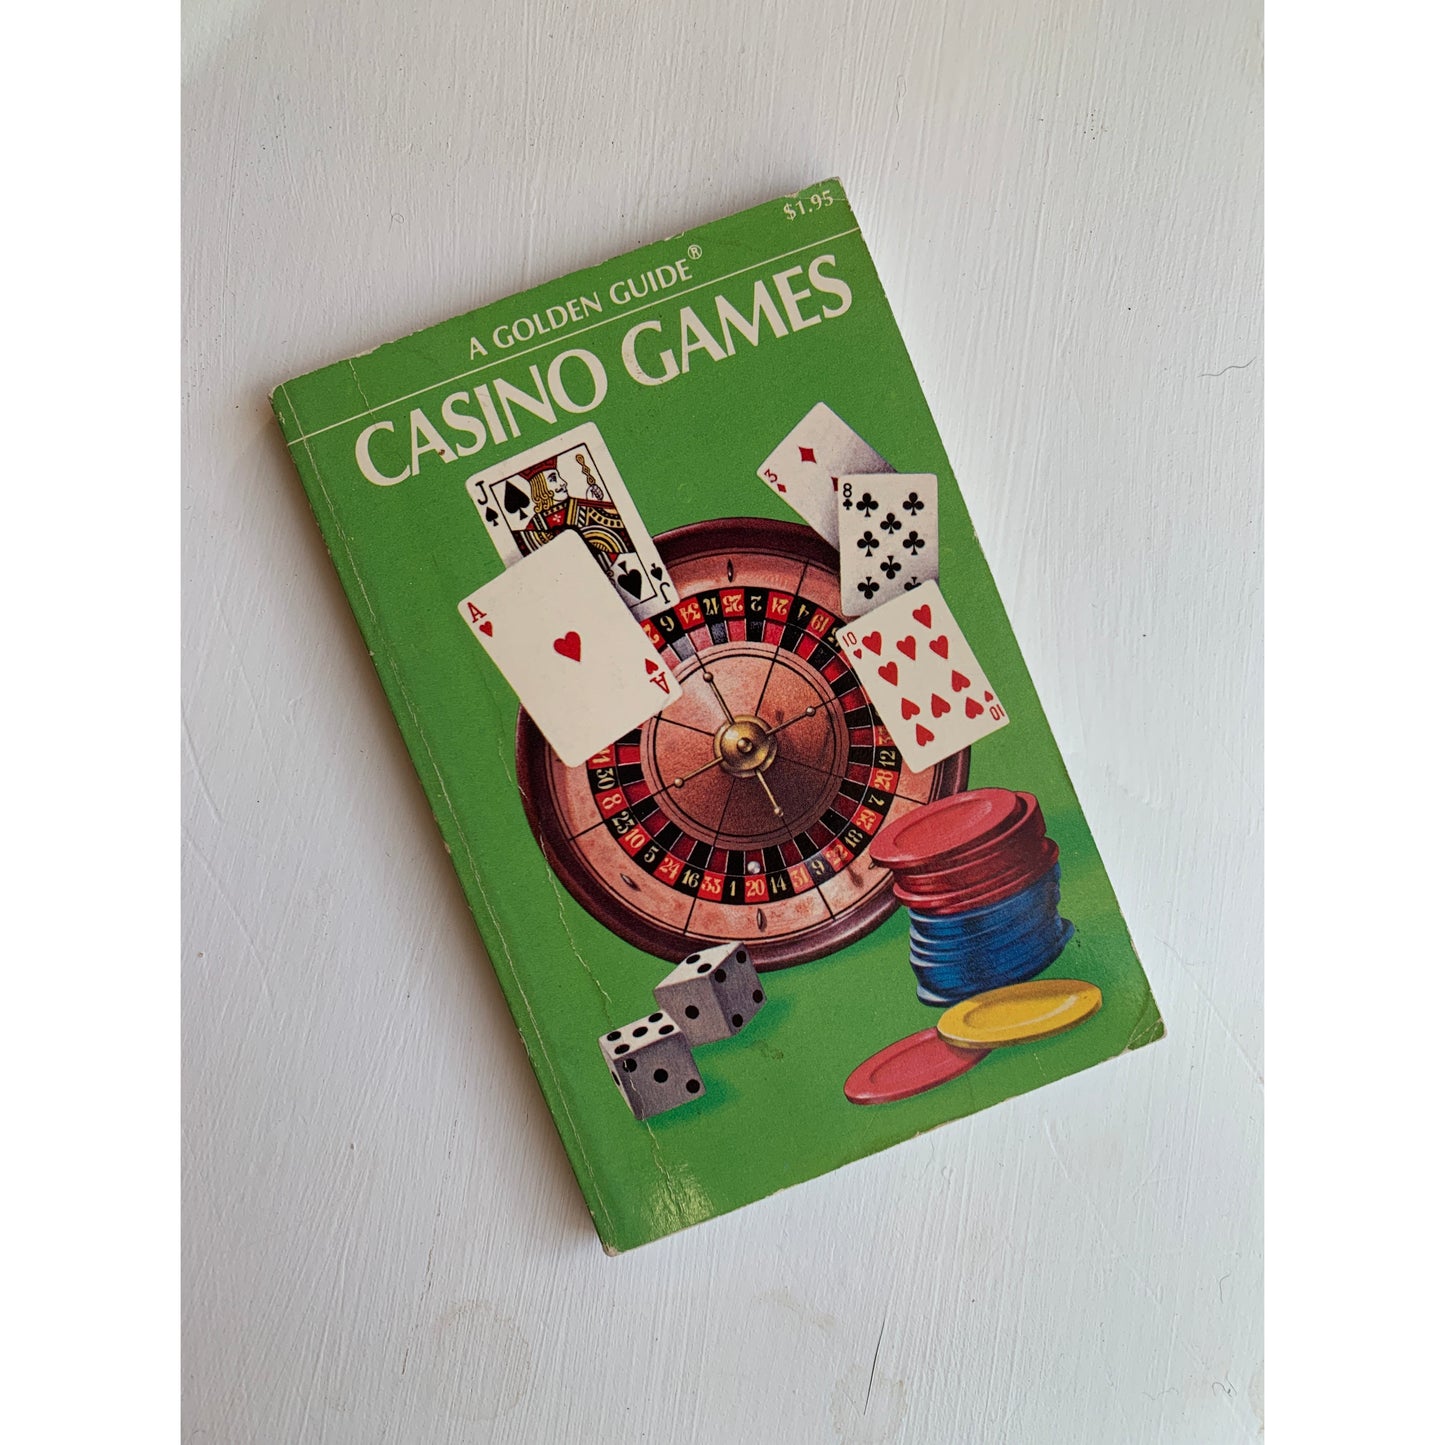 Casino Games: A Golden Guide Handbook 1973